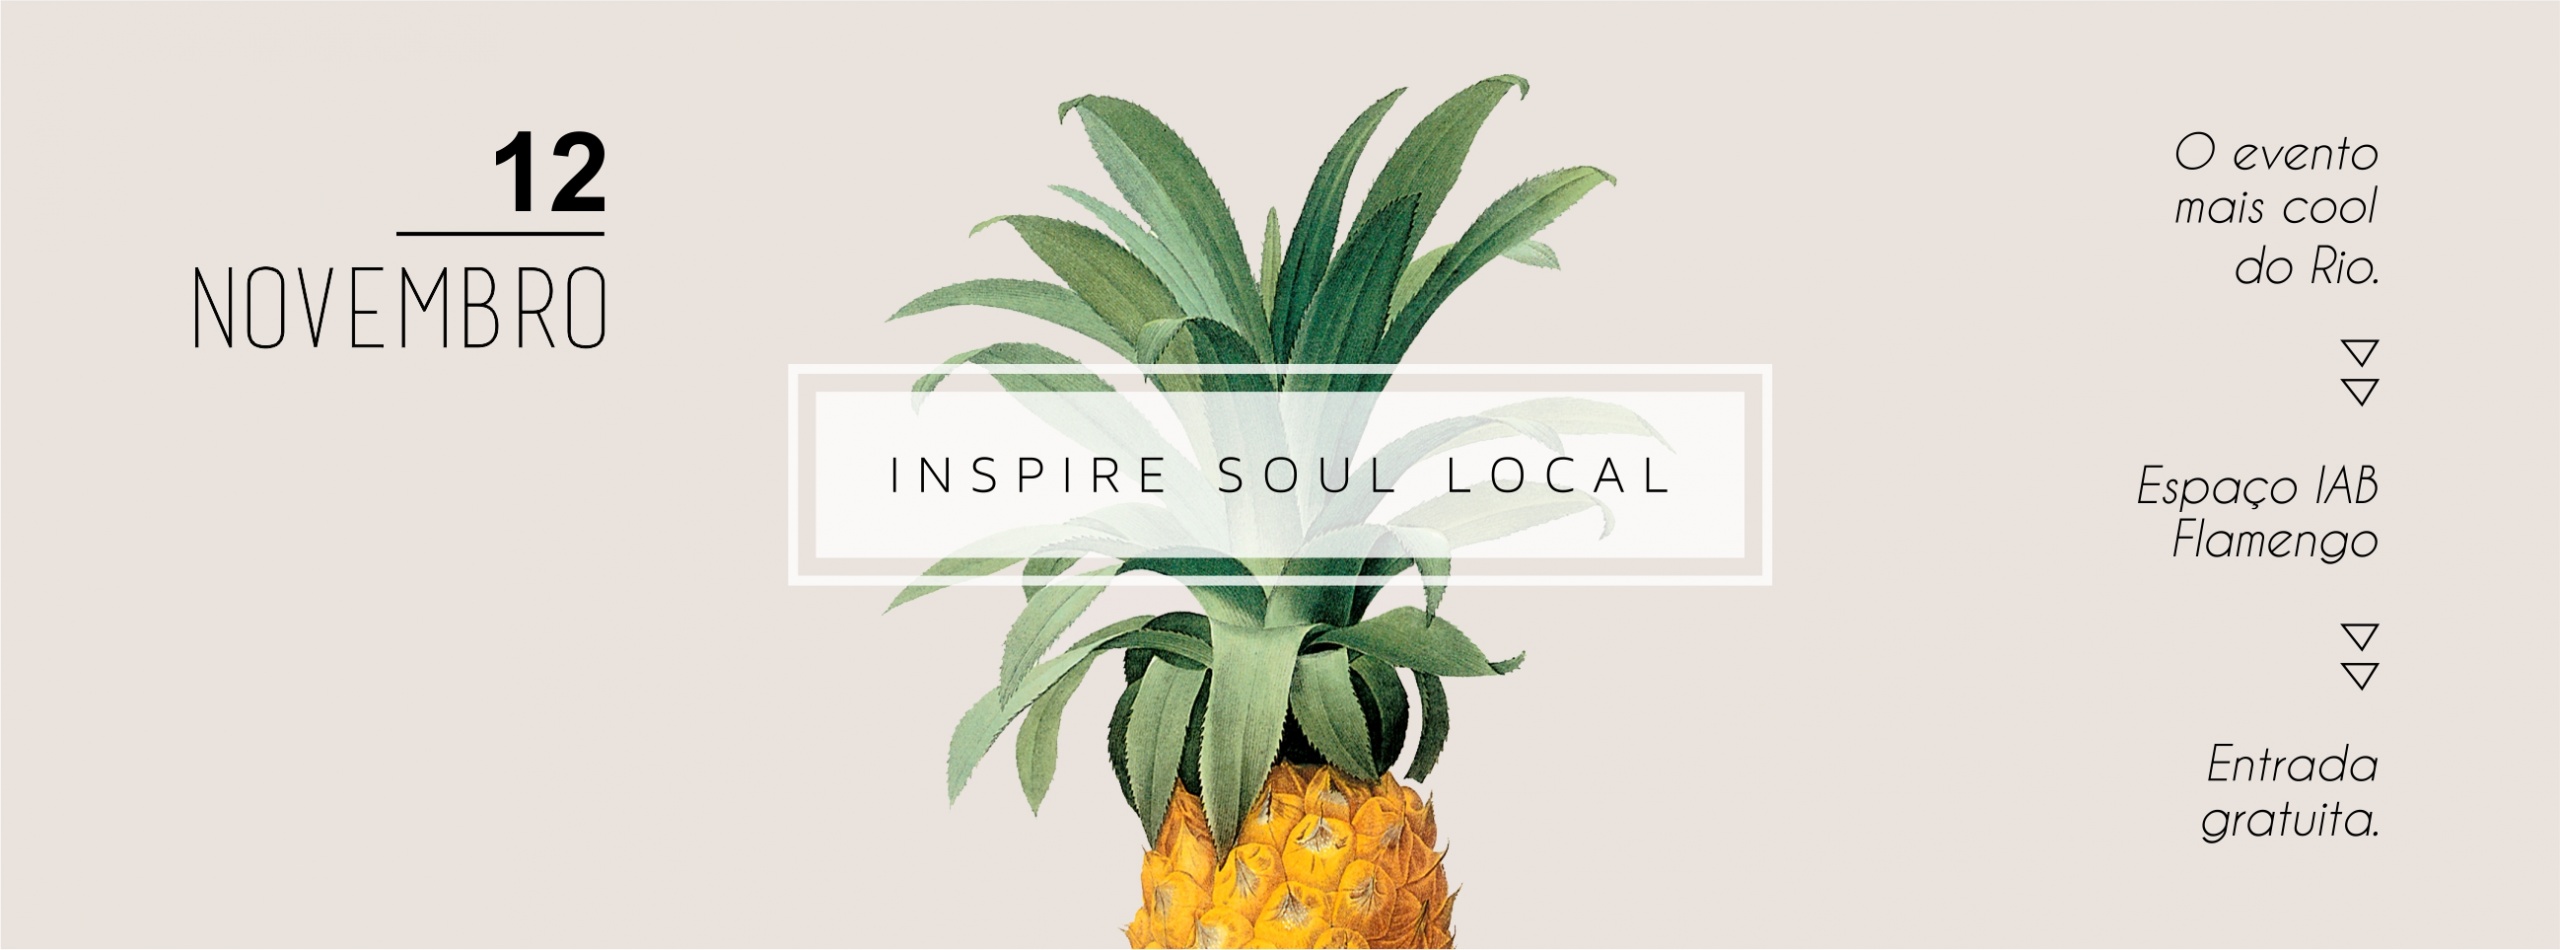 Inspire Soul Local. Saiba mais em https://raquelicias.com.br/.